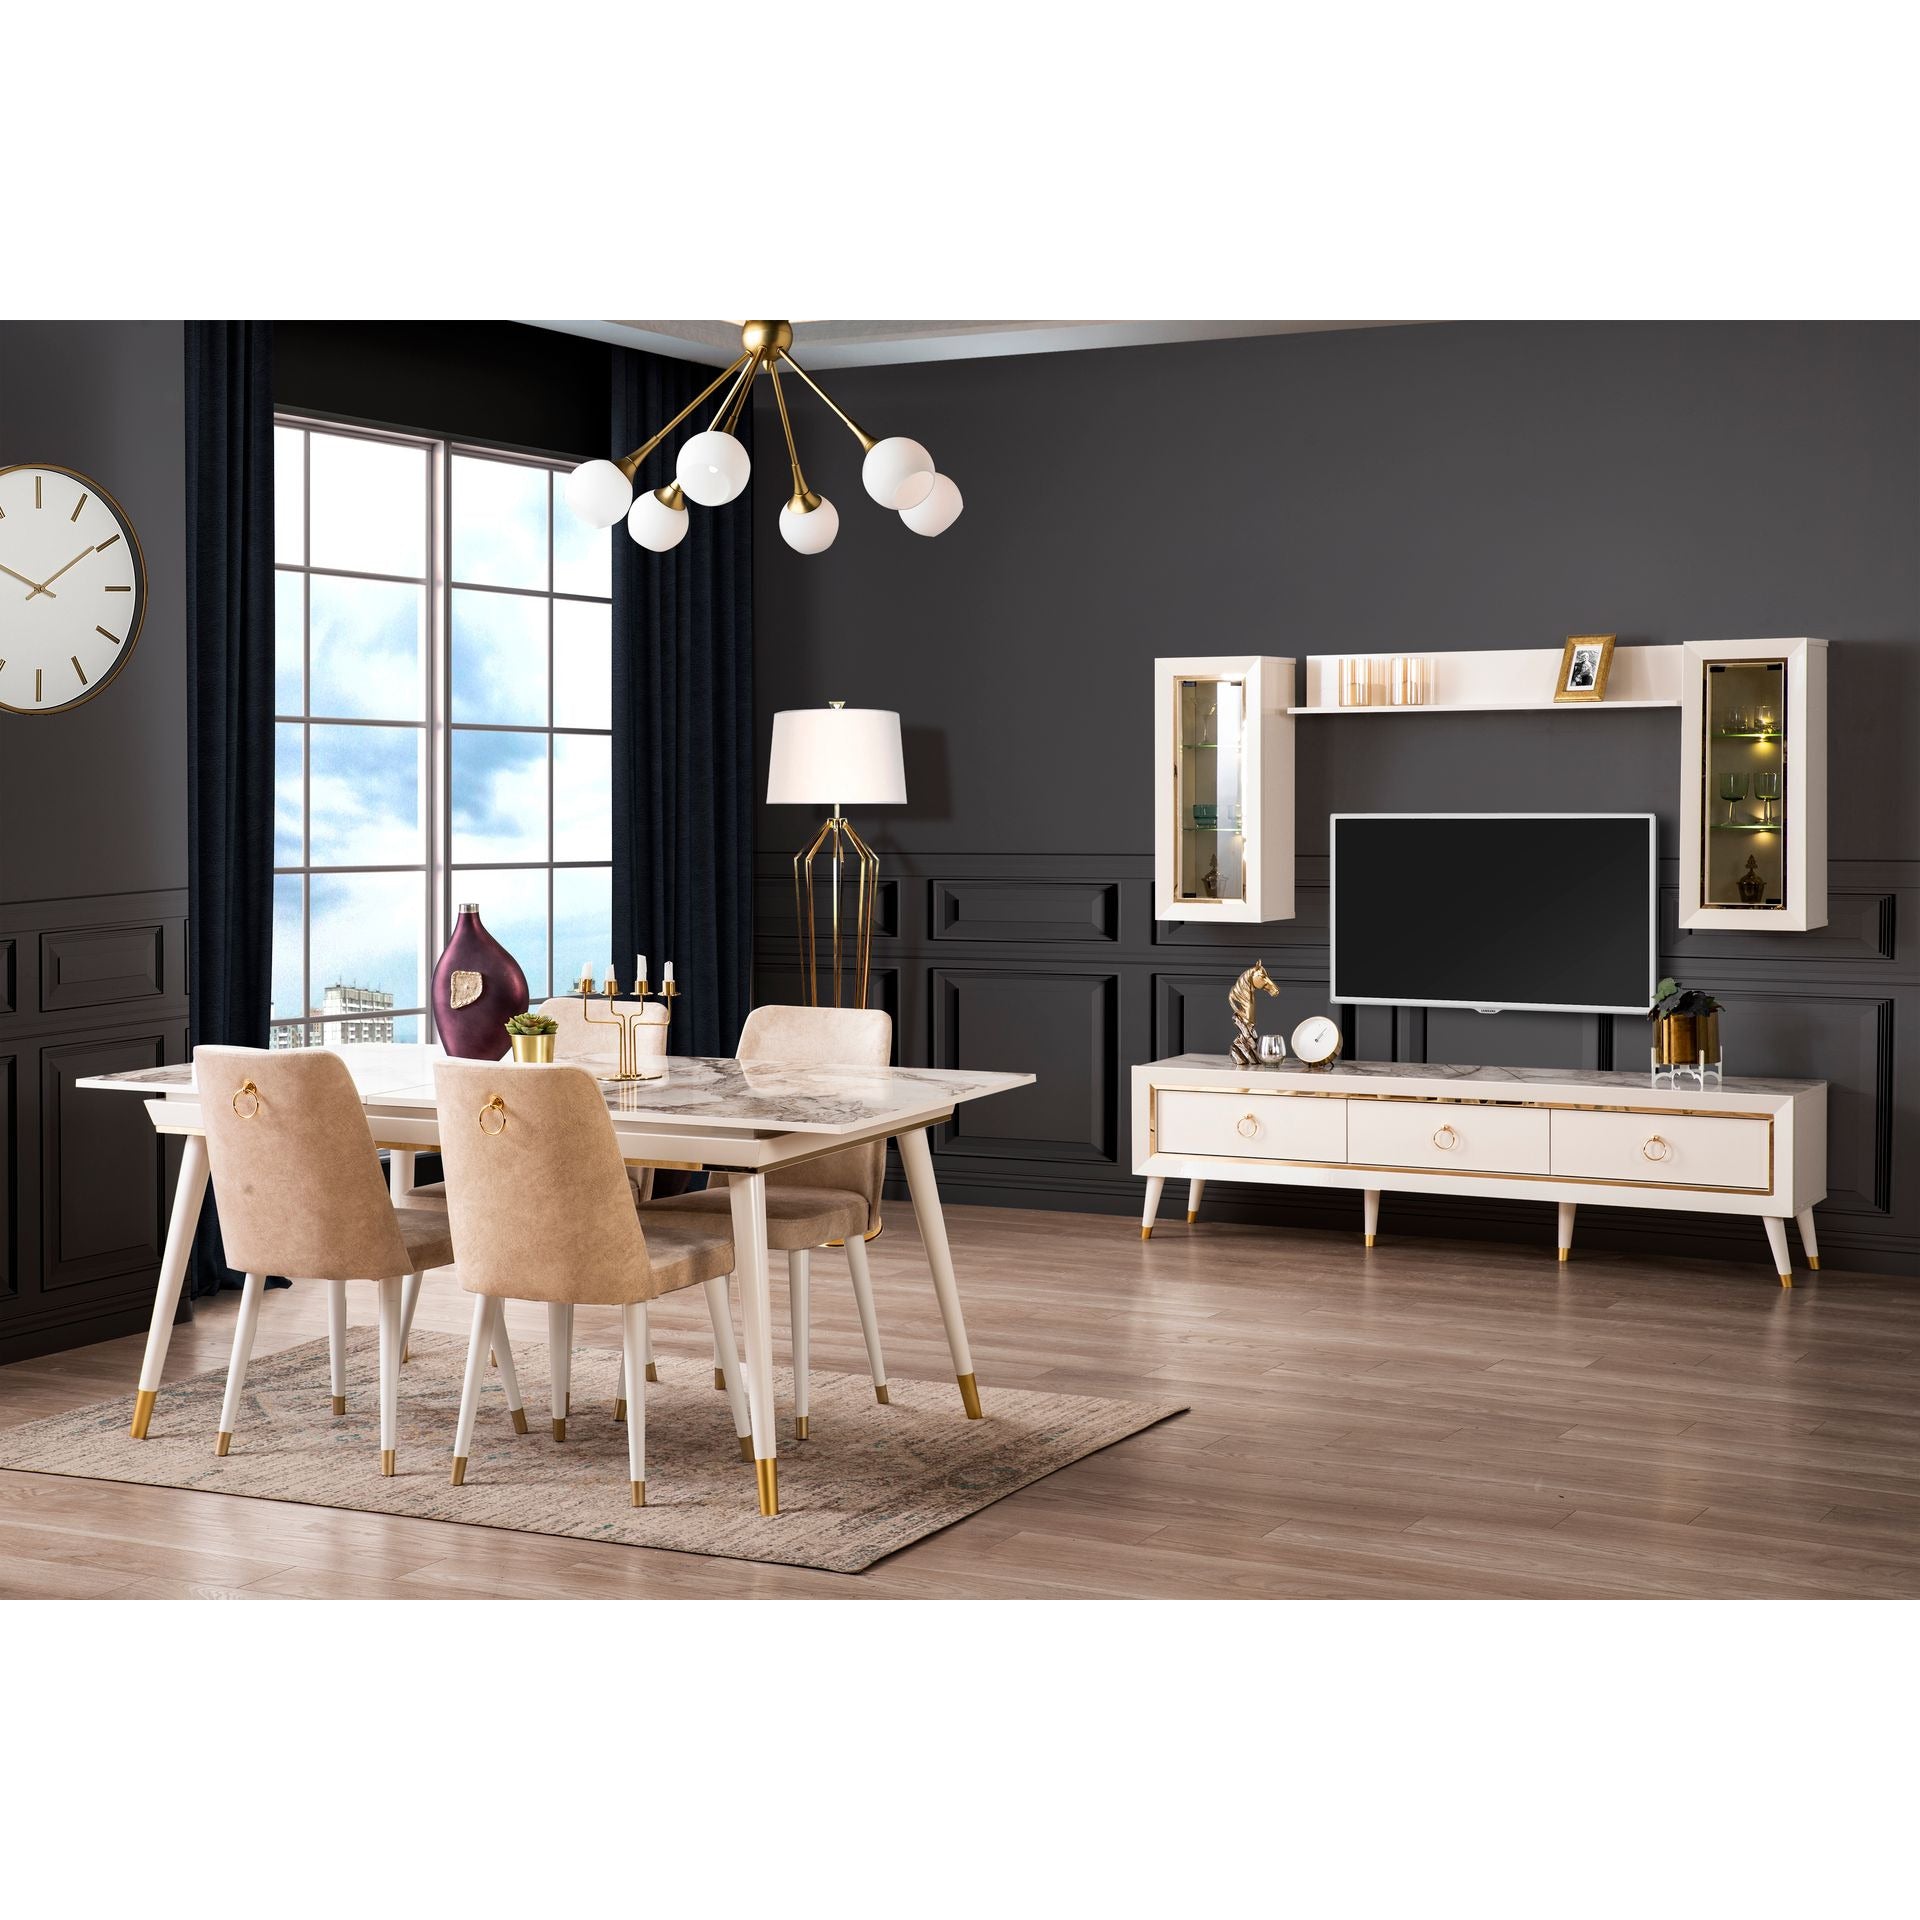 Sahra Förlängningsbart Matbord - LINE Furniture Group